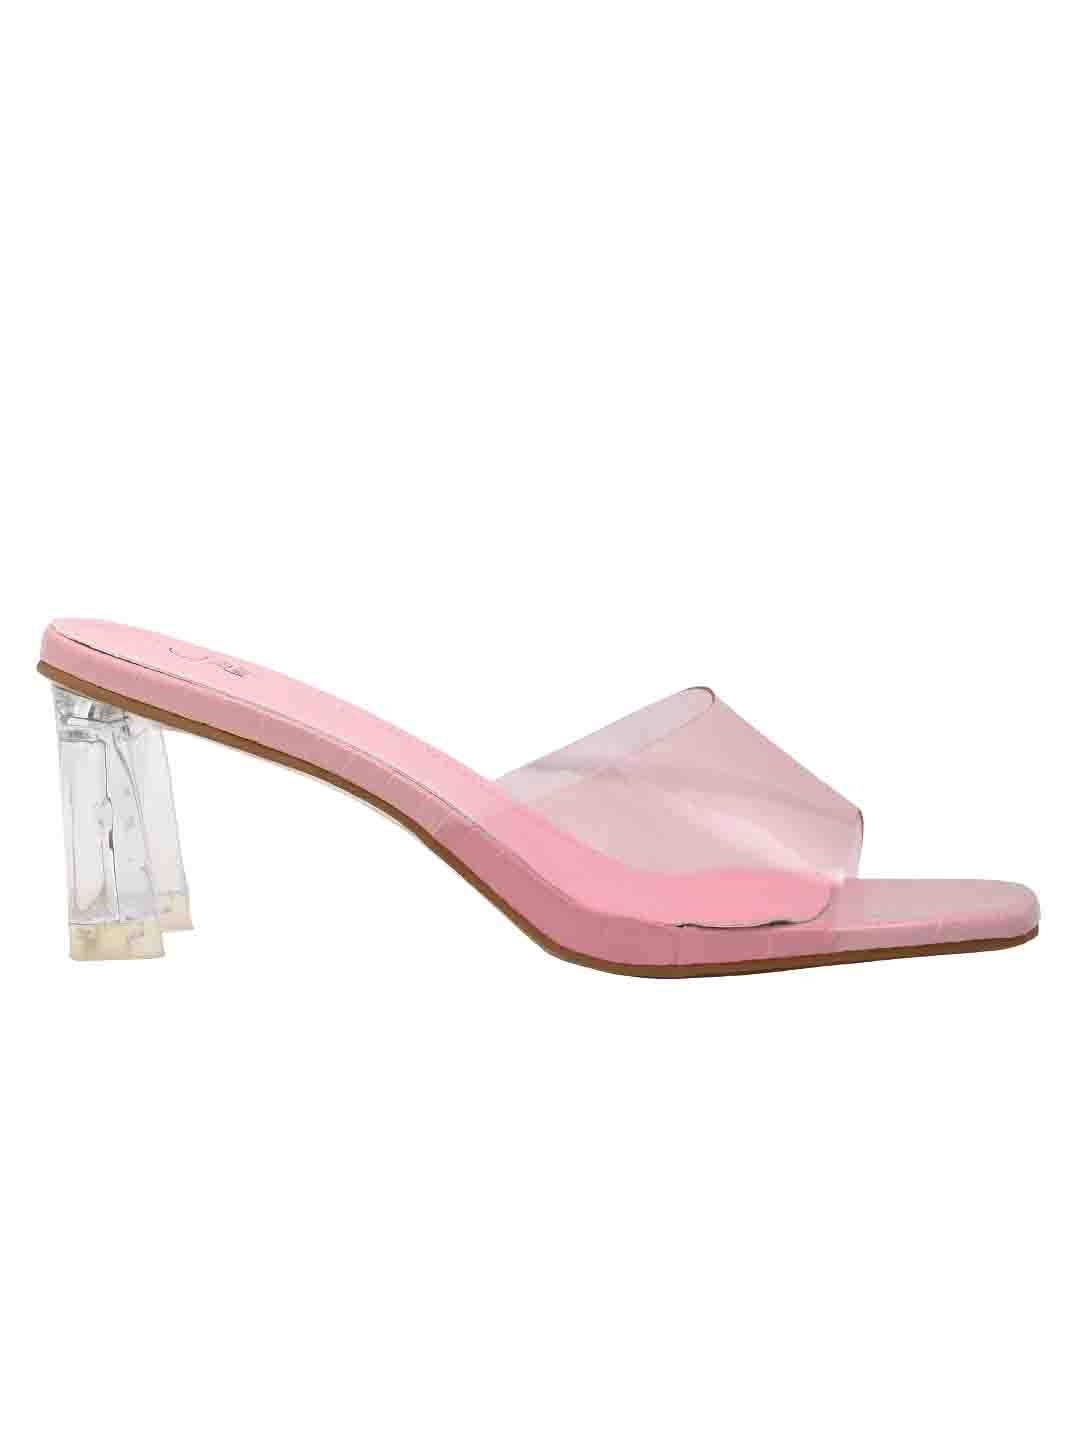 Footwear, Women Footewear, Pink Sandals